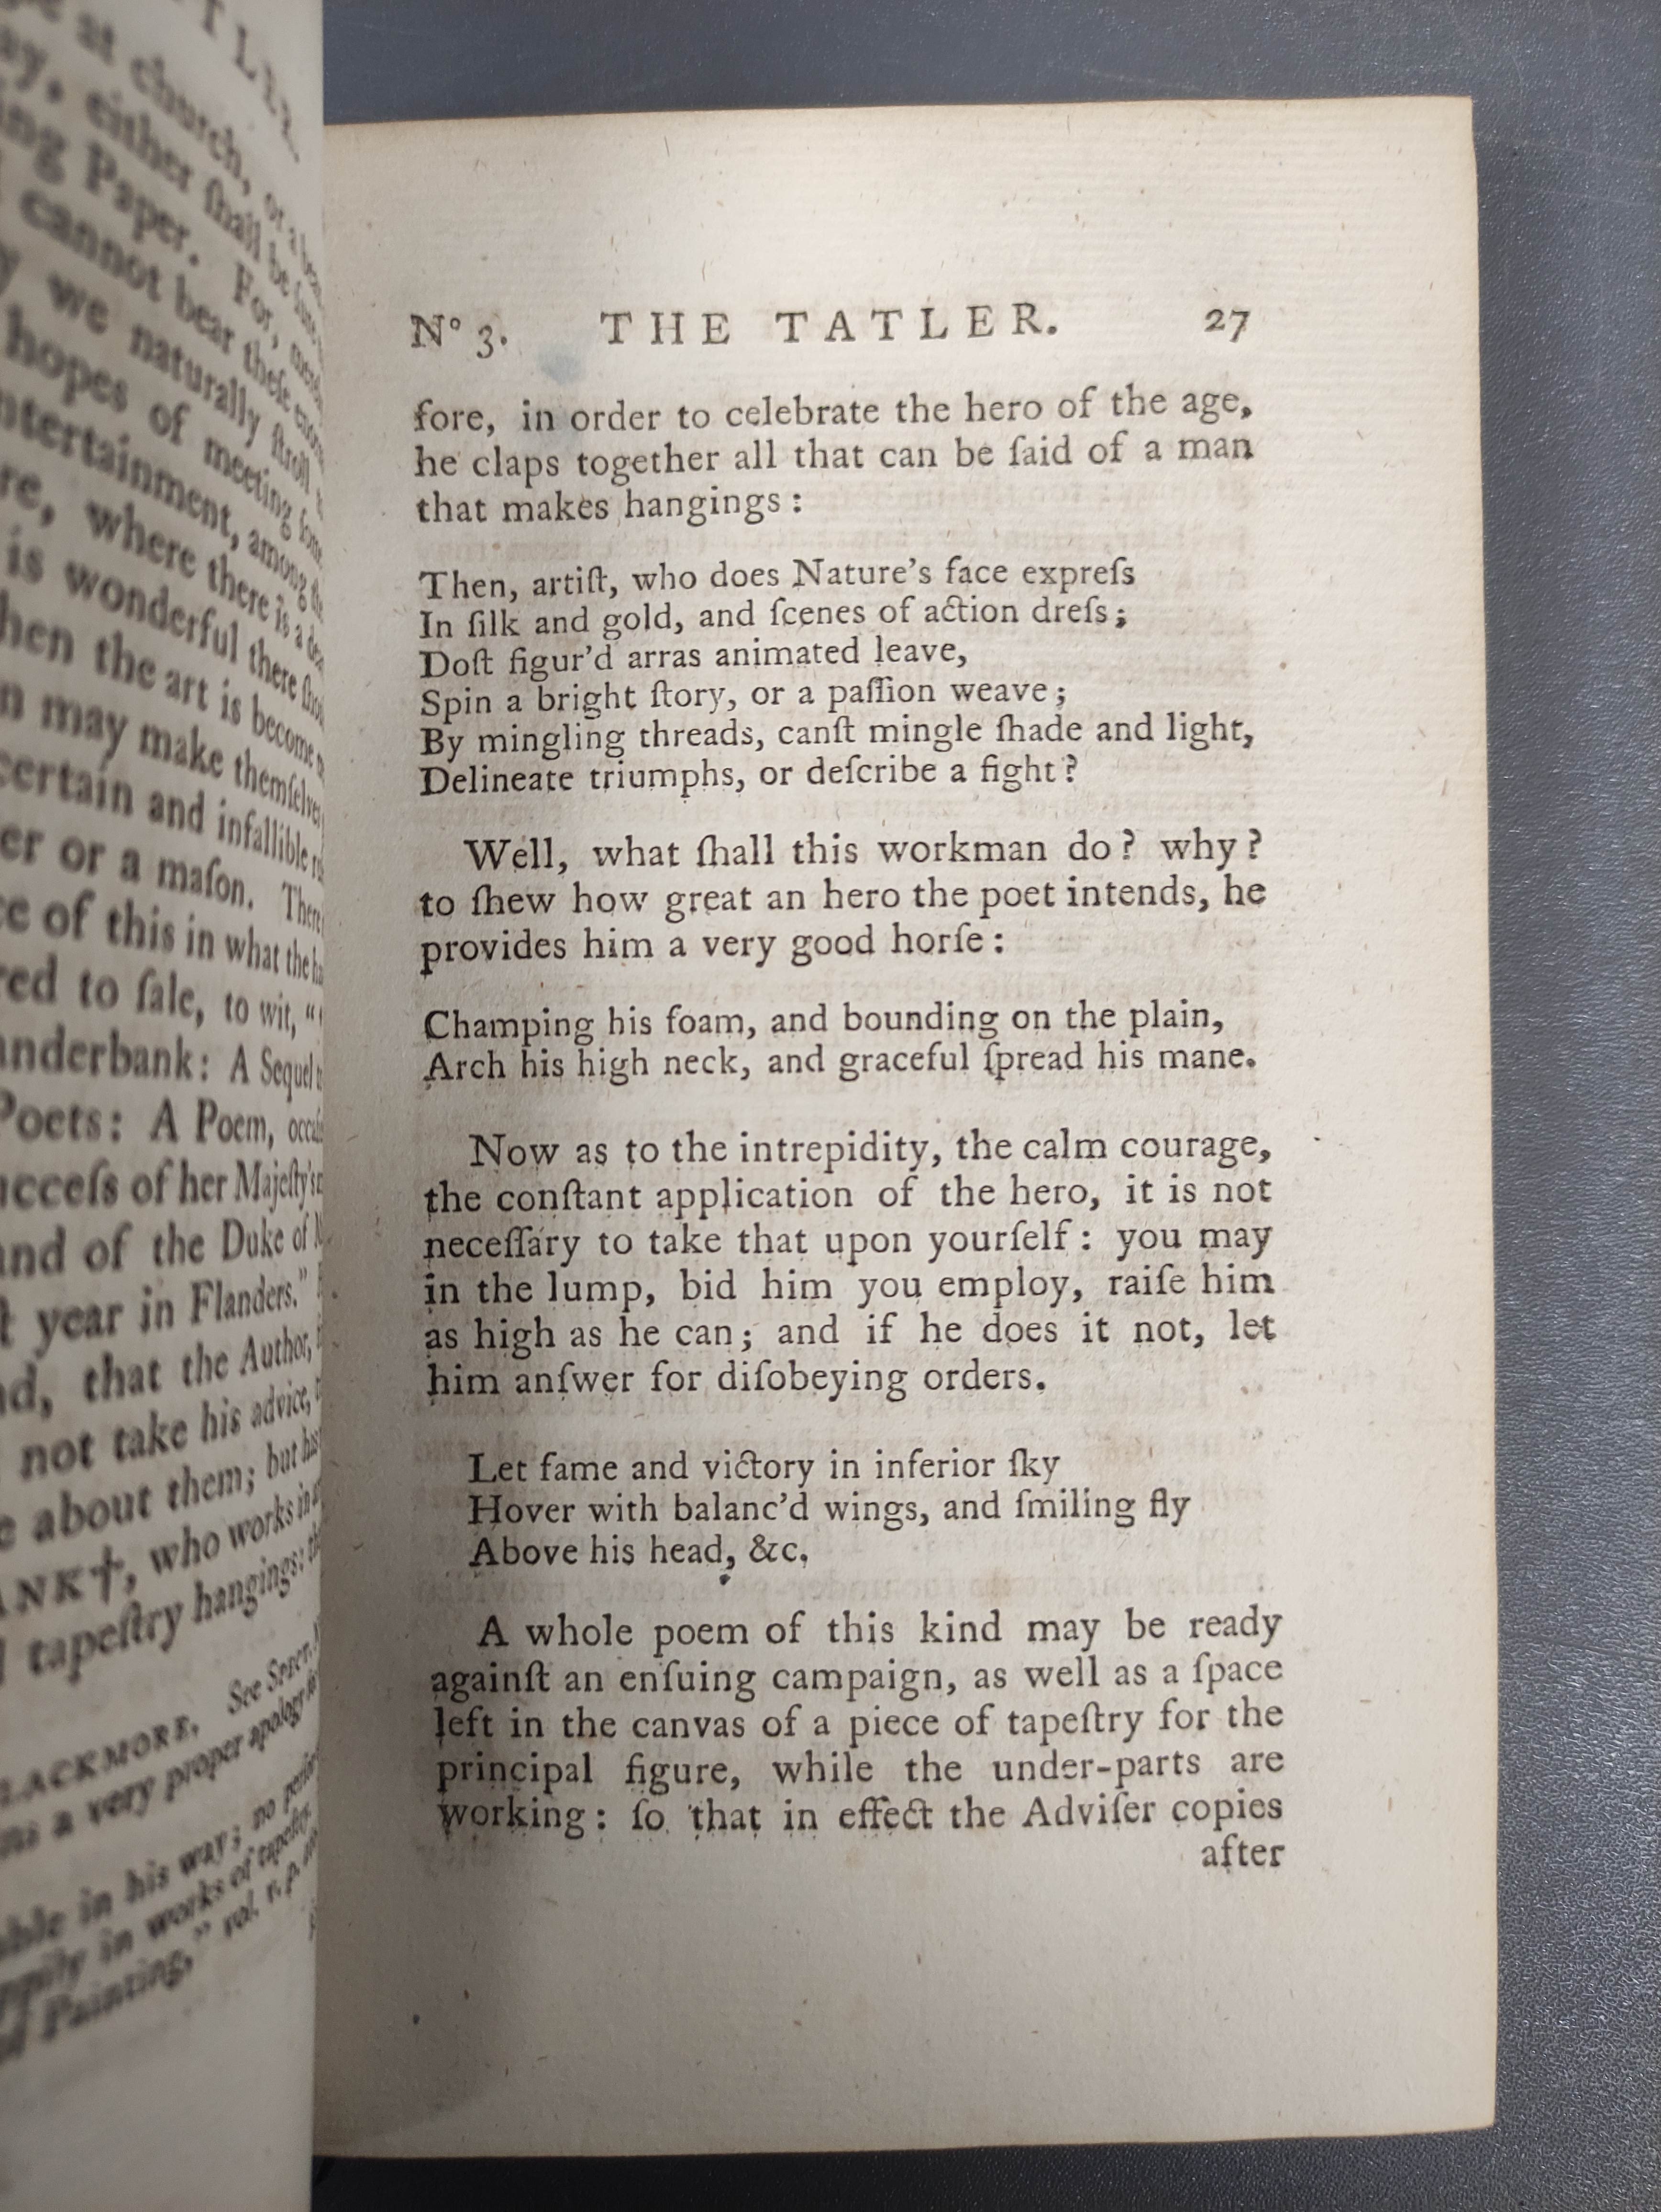 The Tatler.  4 vols. Eng. title vignettes. Rebacked old calf. 1789. - Image 6 of 6